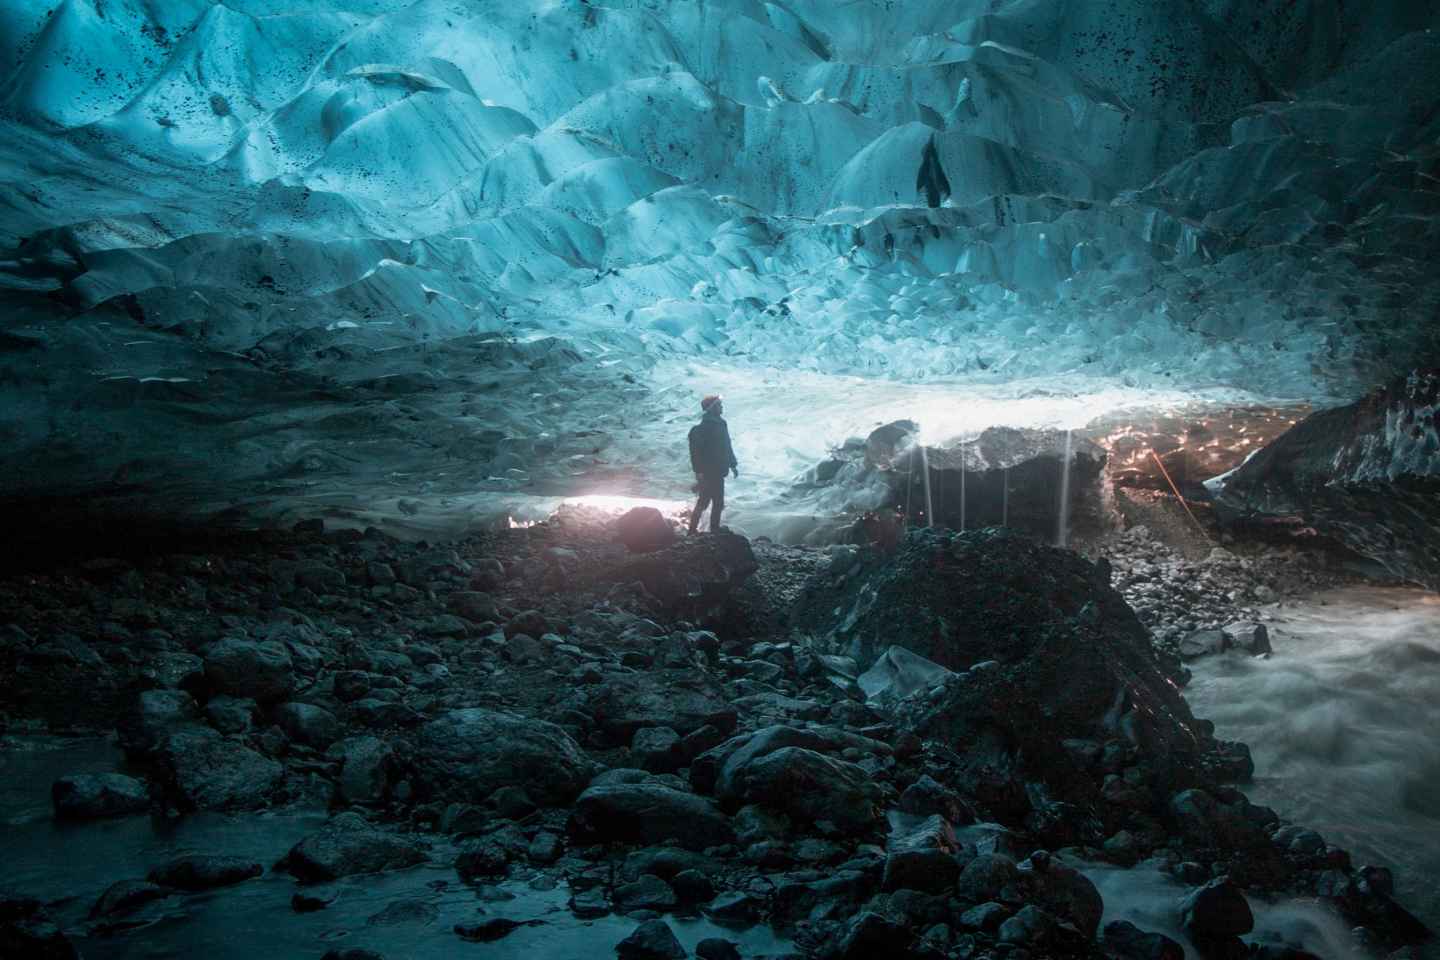 Jökulsárlón: Vatnajökull Glacier Ice Cave Guided Day Trip